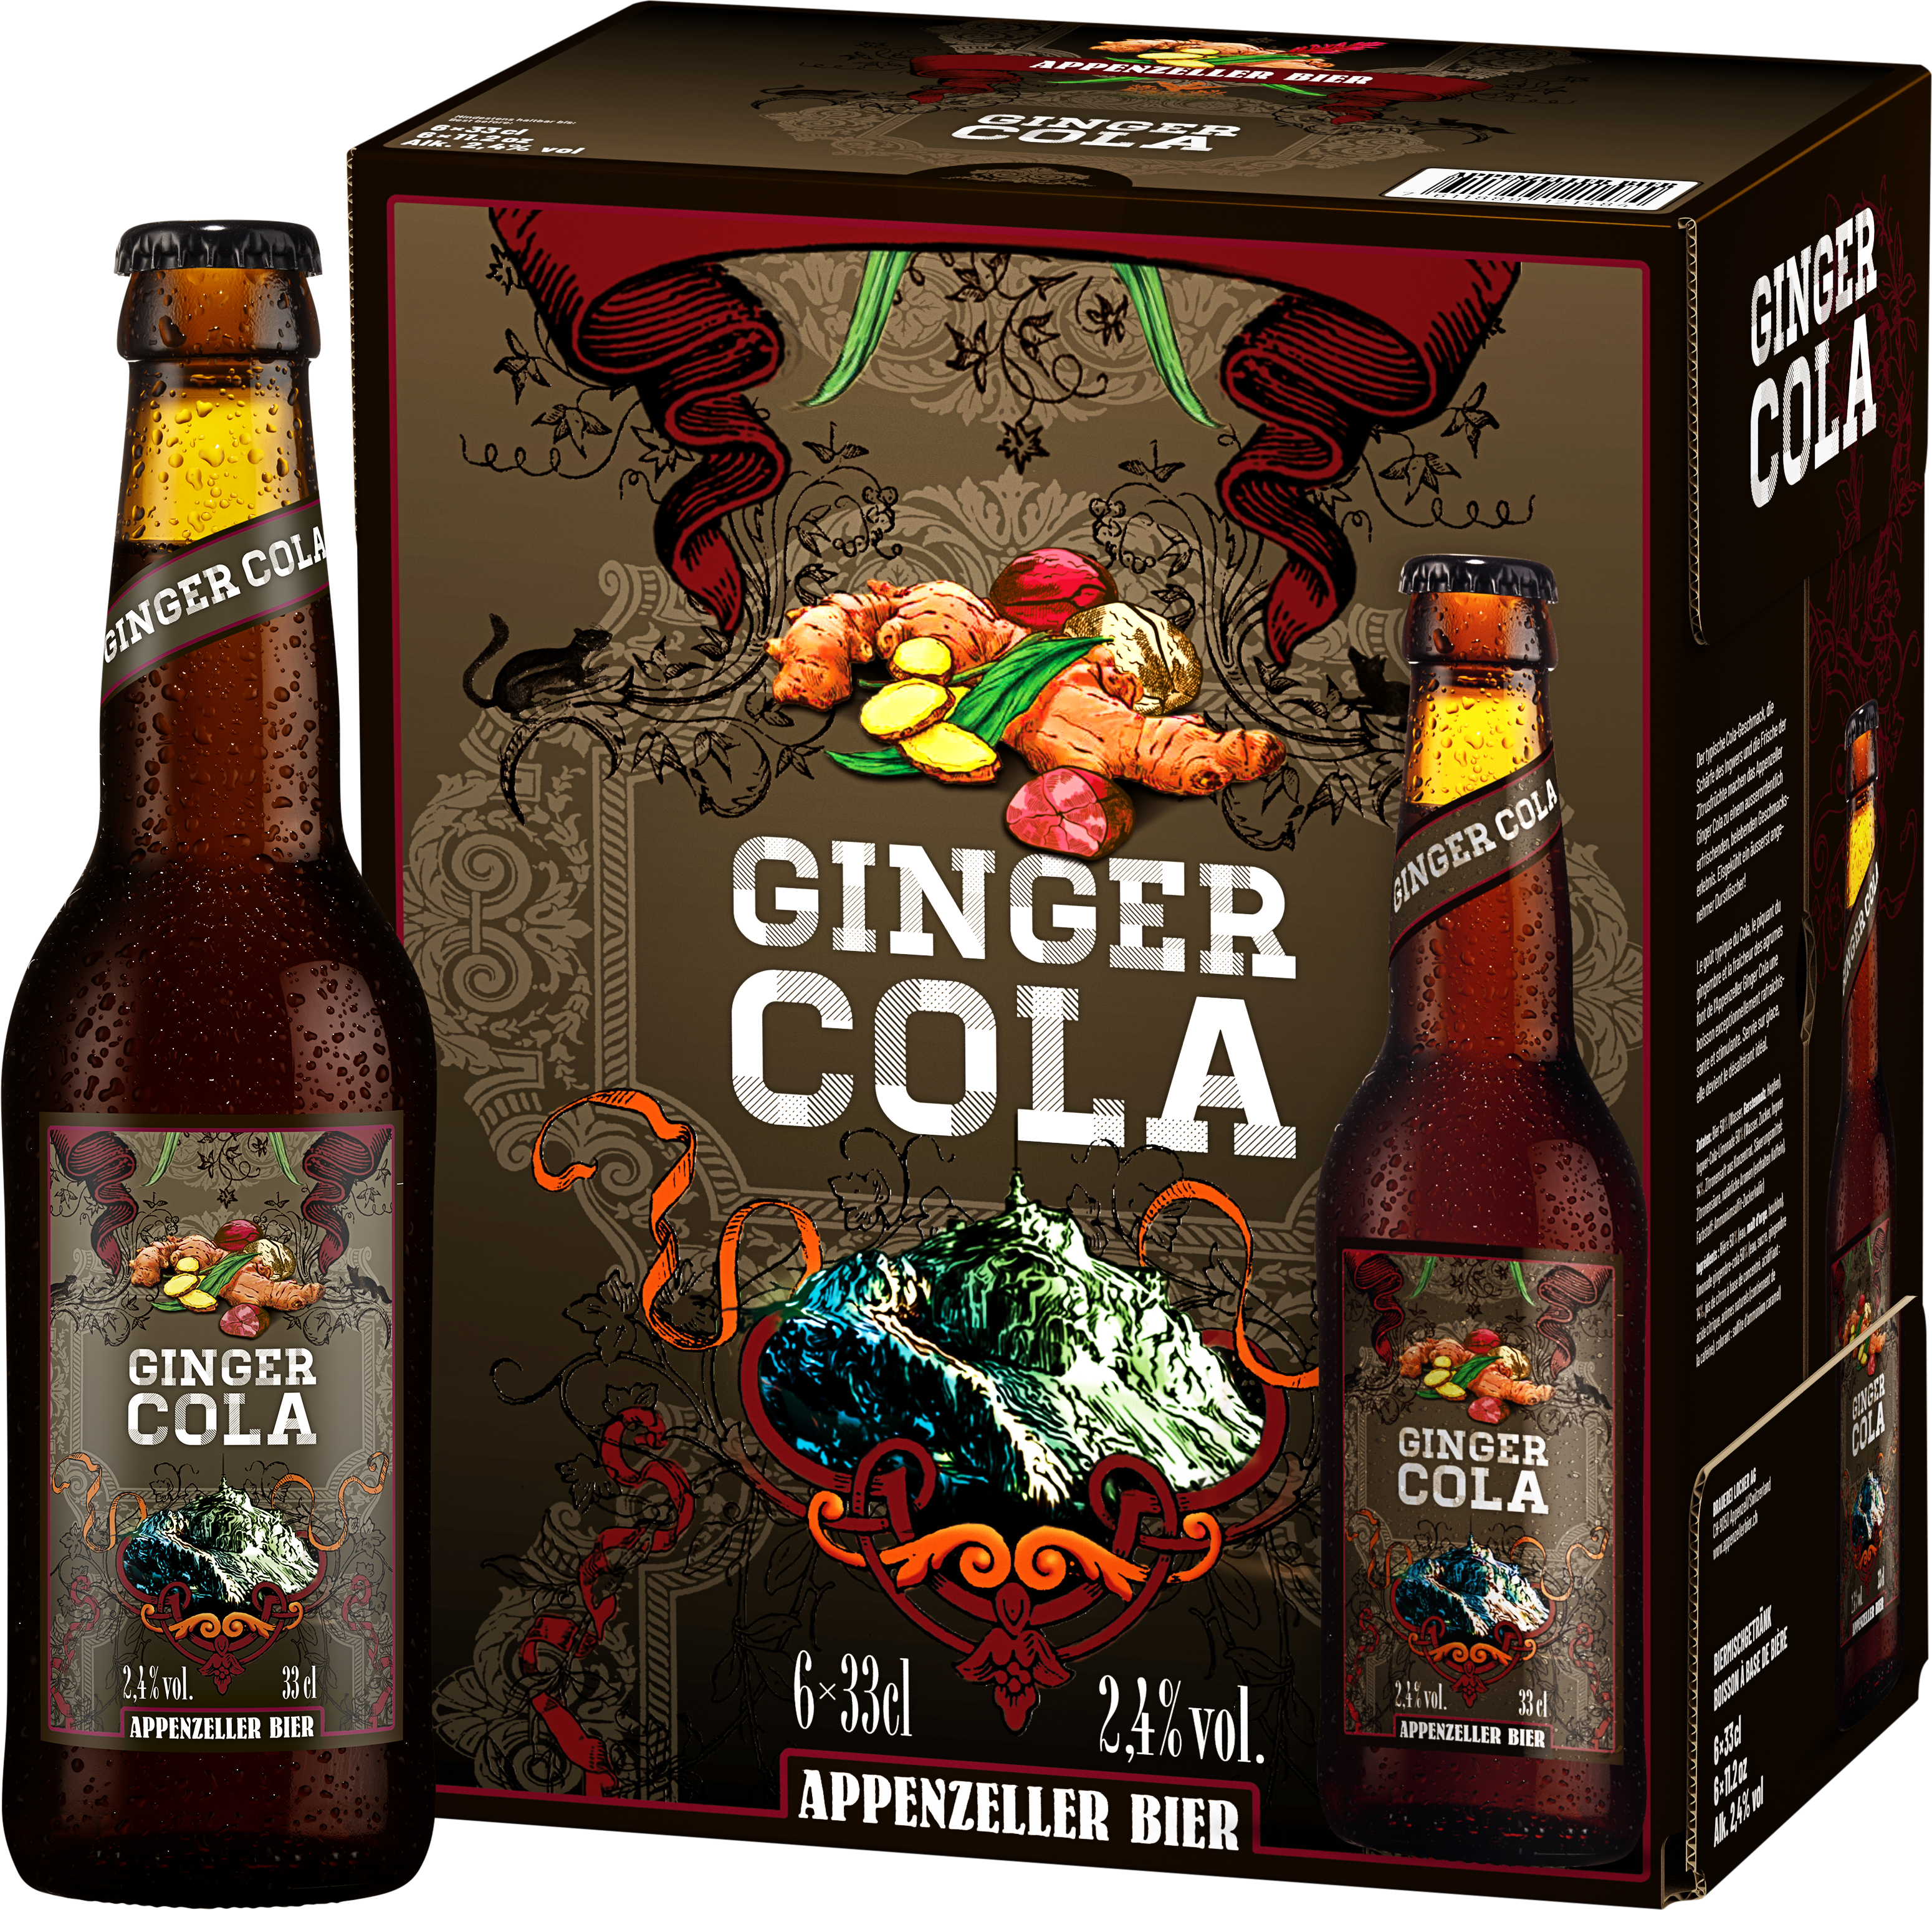 Schweizweit erstes Ginger Cola Bier lanciert